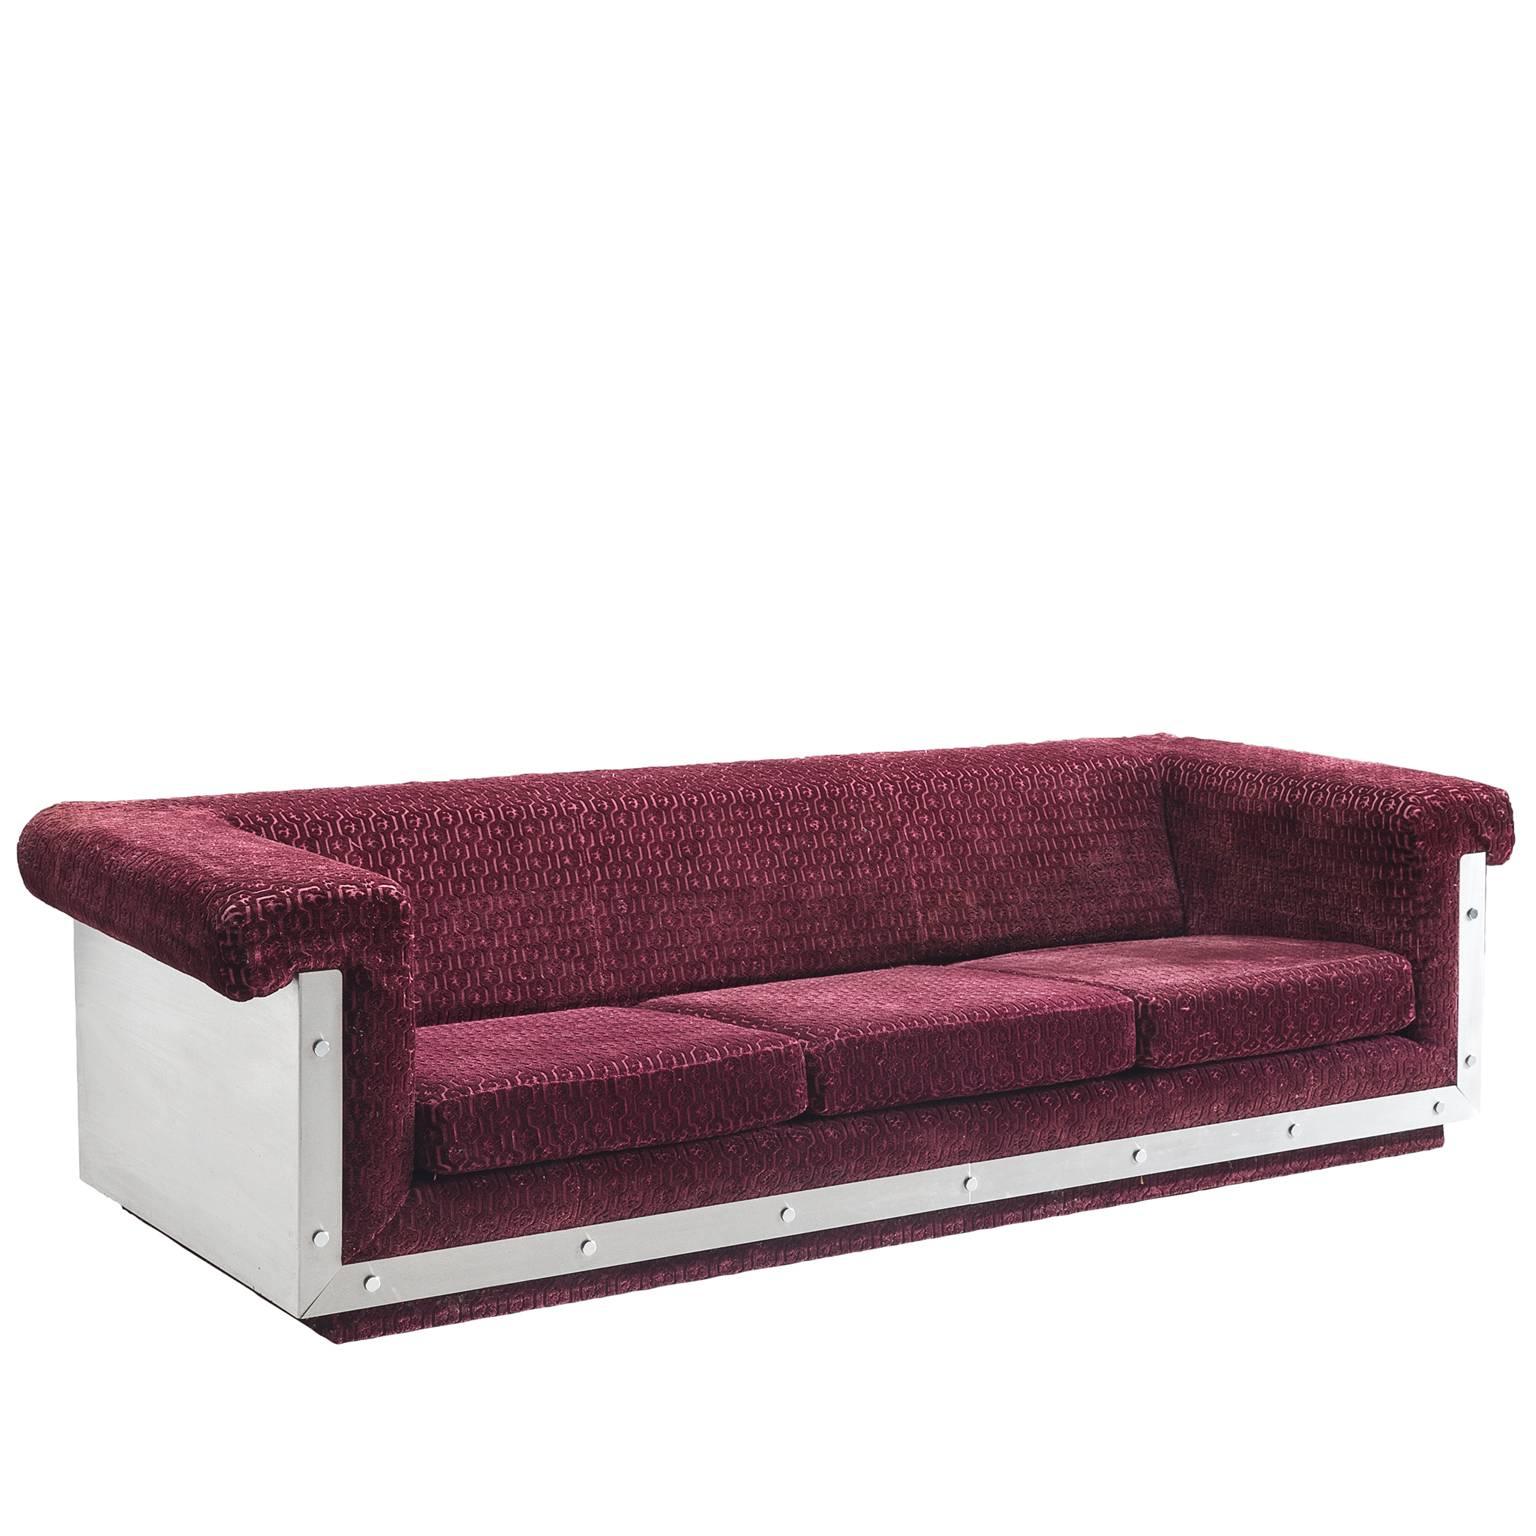 French Sofa in Stainless Steel and Burgundy Velvet Upholstery